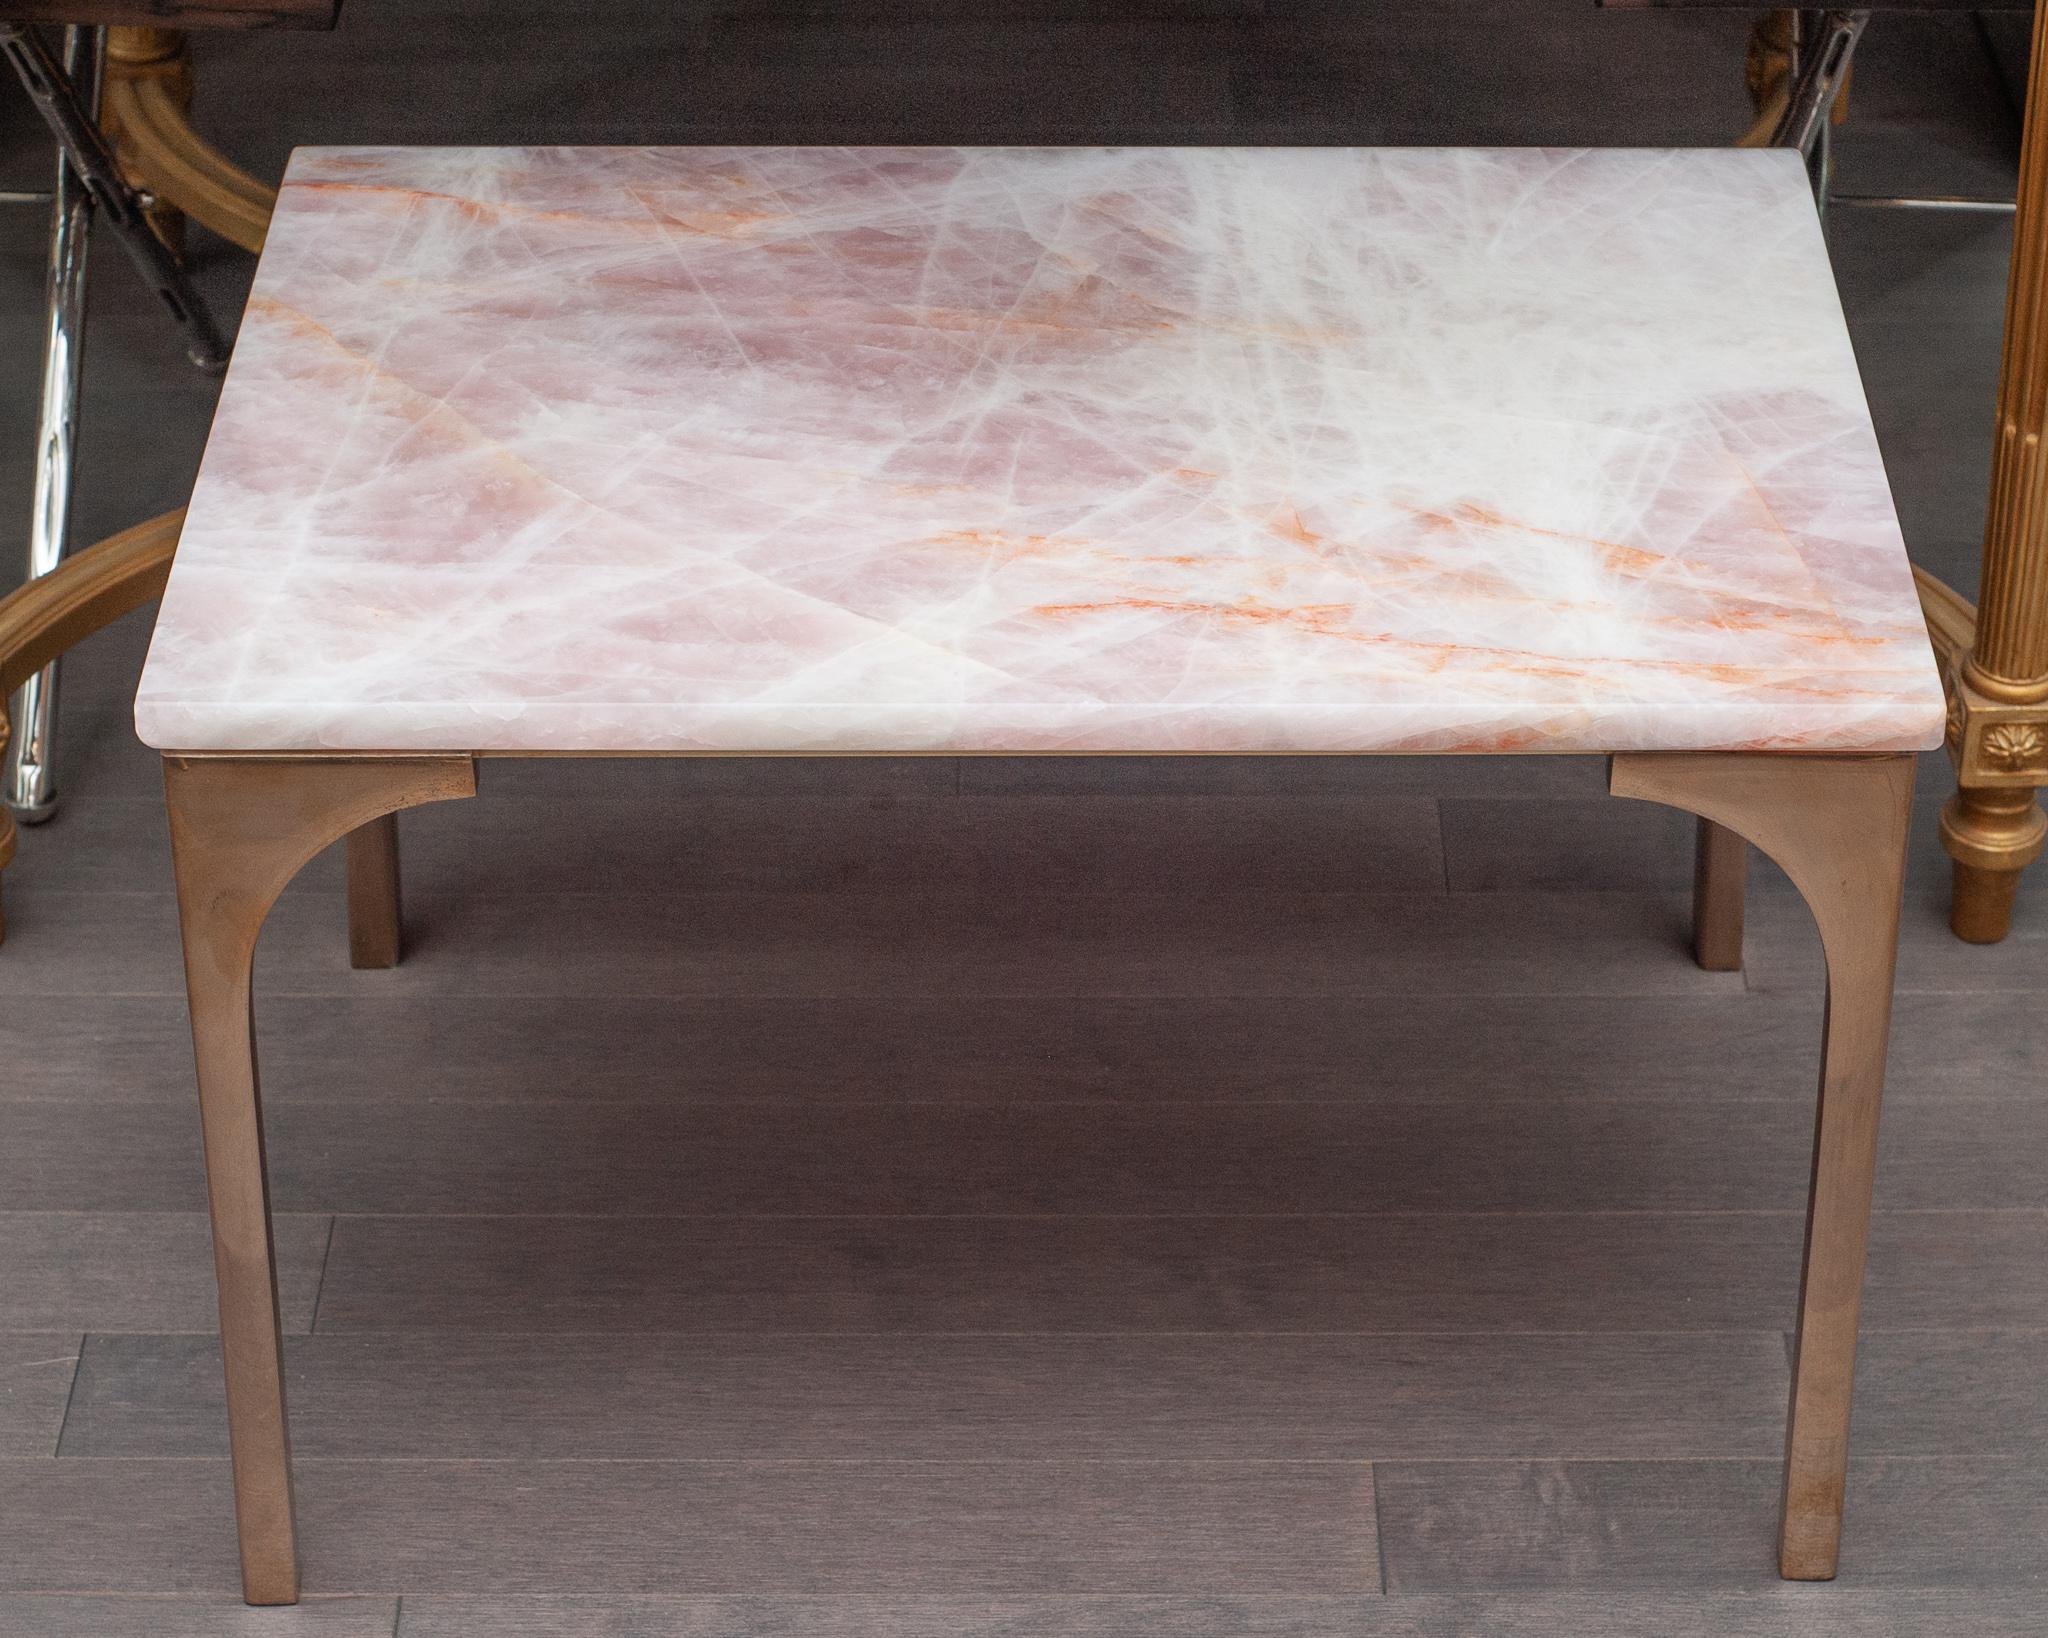 Une magnifique table de Studio Maison Nurita en quartz rose et bronze. Fabriquée à partir d'une dalle solide de quartz rose de la plus haute qualité provenant du Brésil, cette table est dotée de pieds en bronze coulé massif de couleur or rose poli.